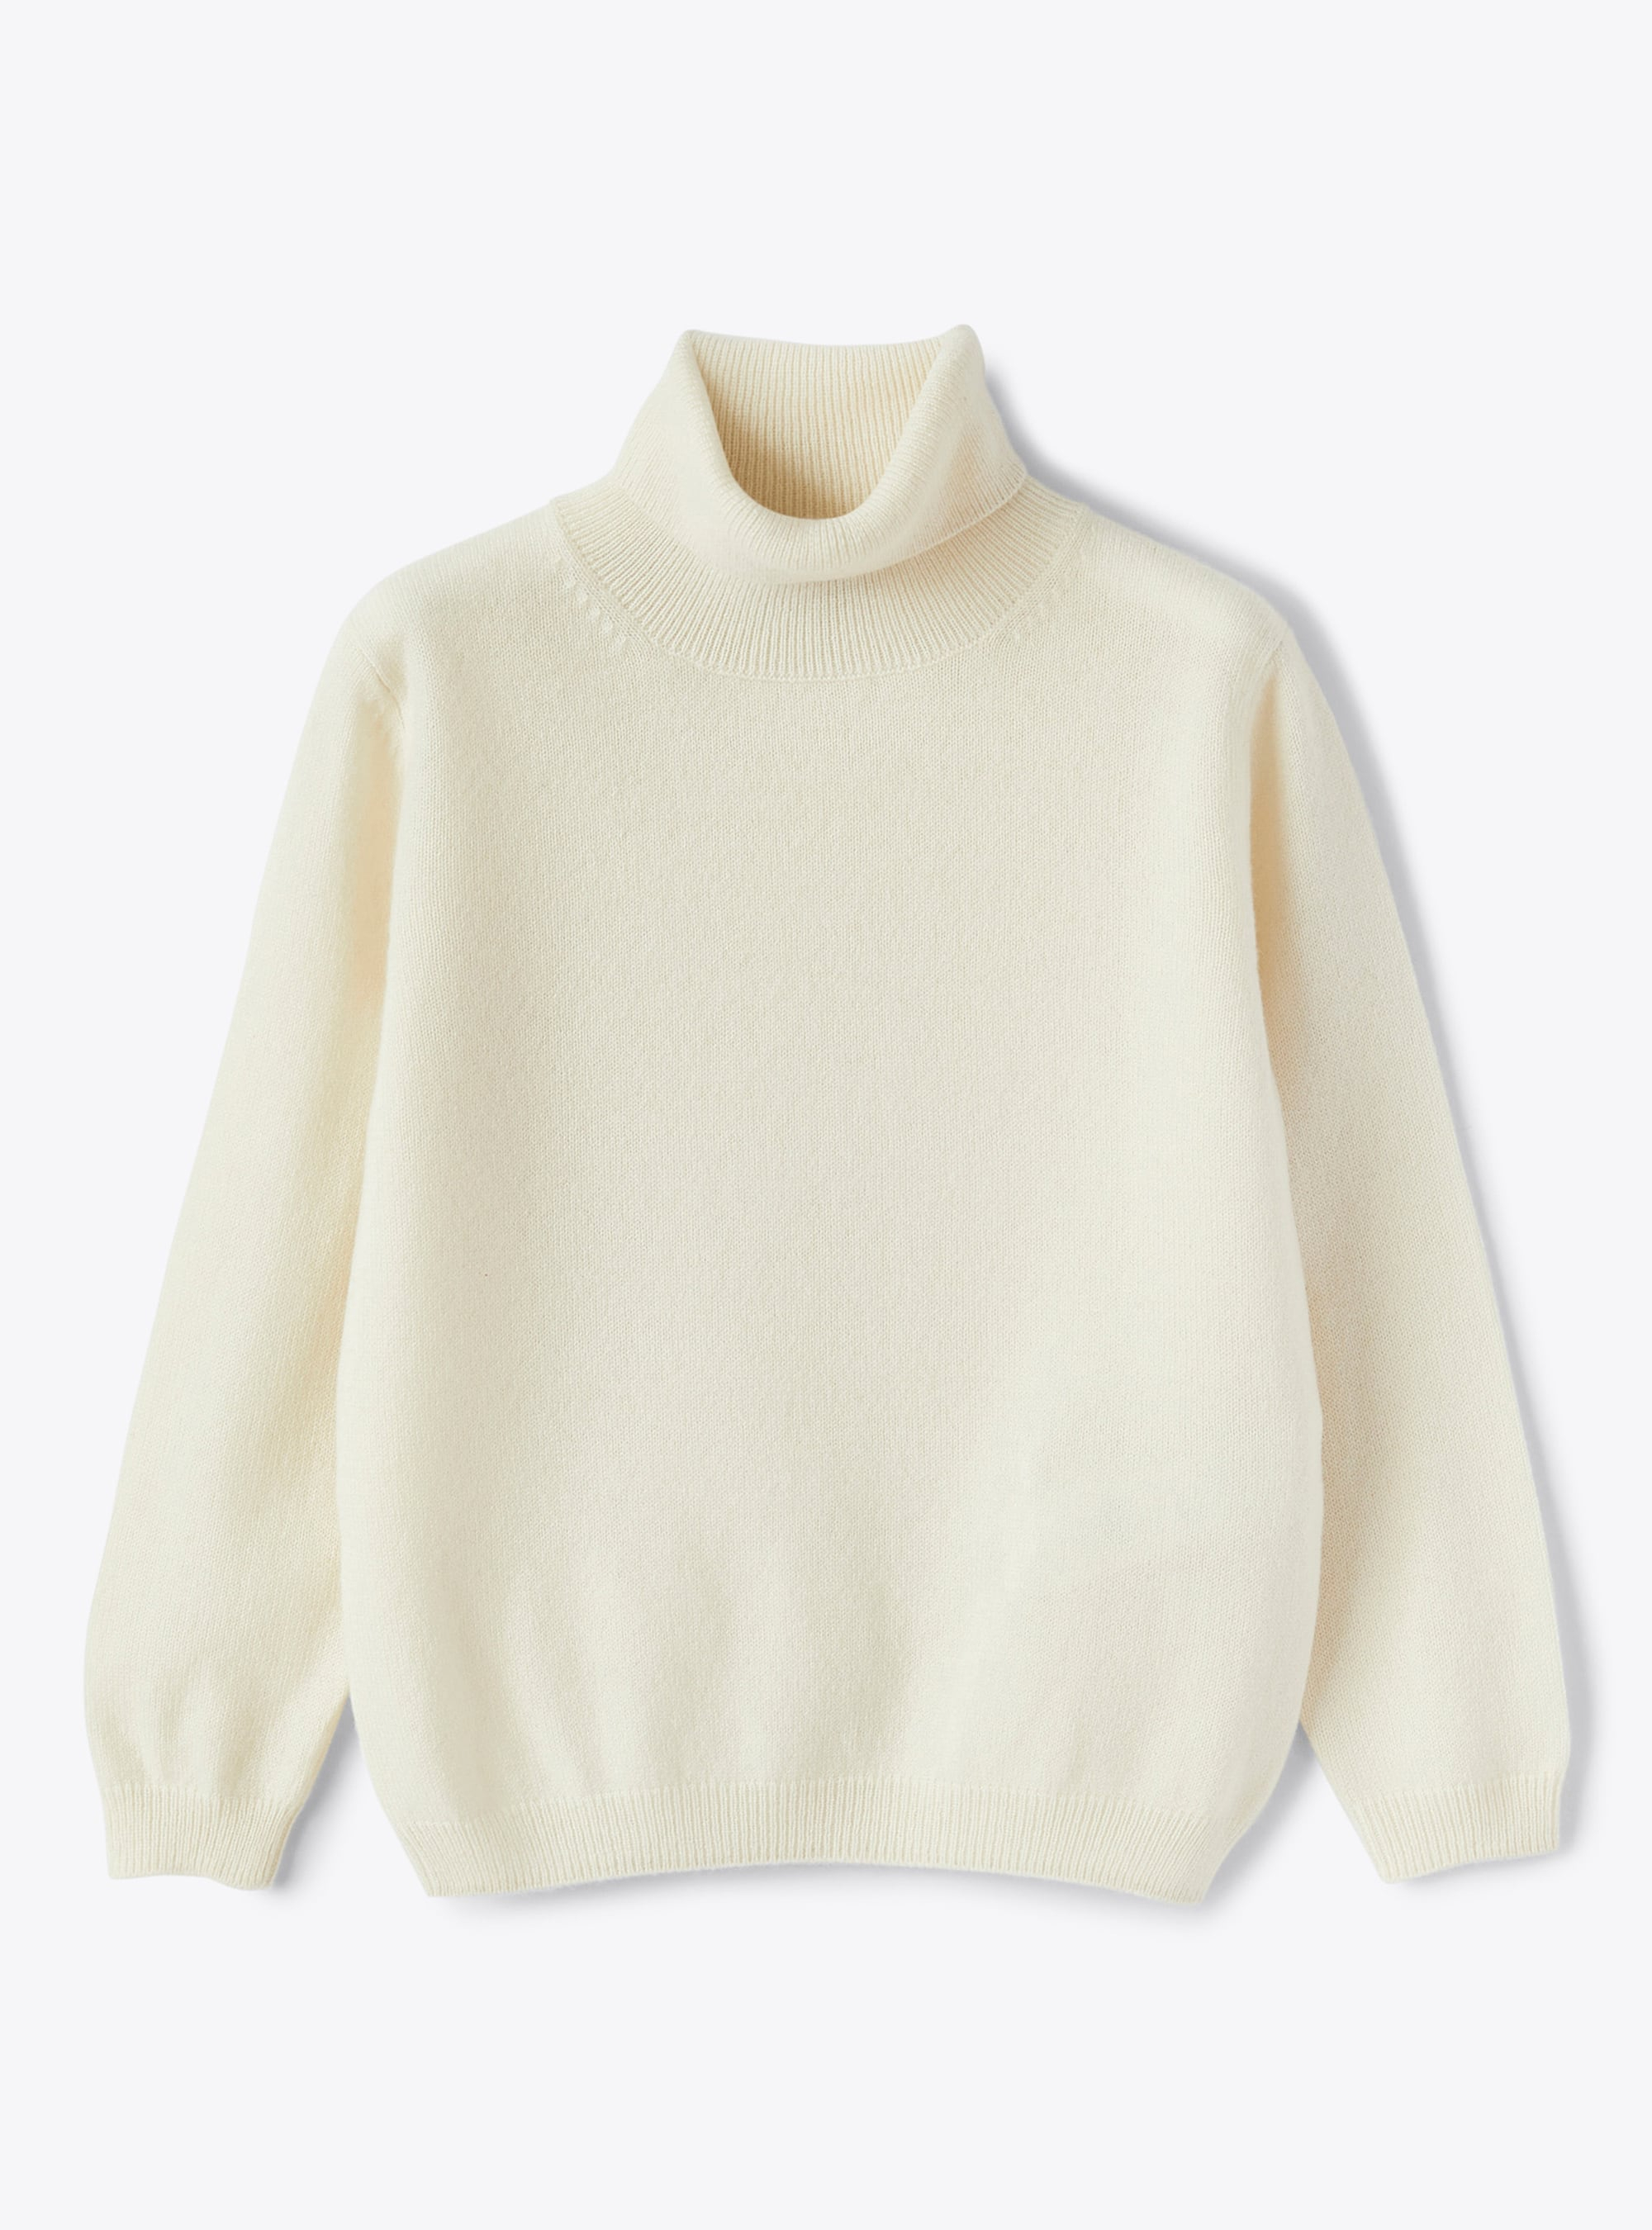 Milk white cashmere turtleneck sweater - Sweaters - Il Gufo